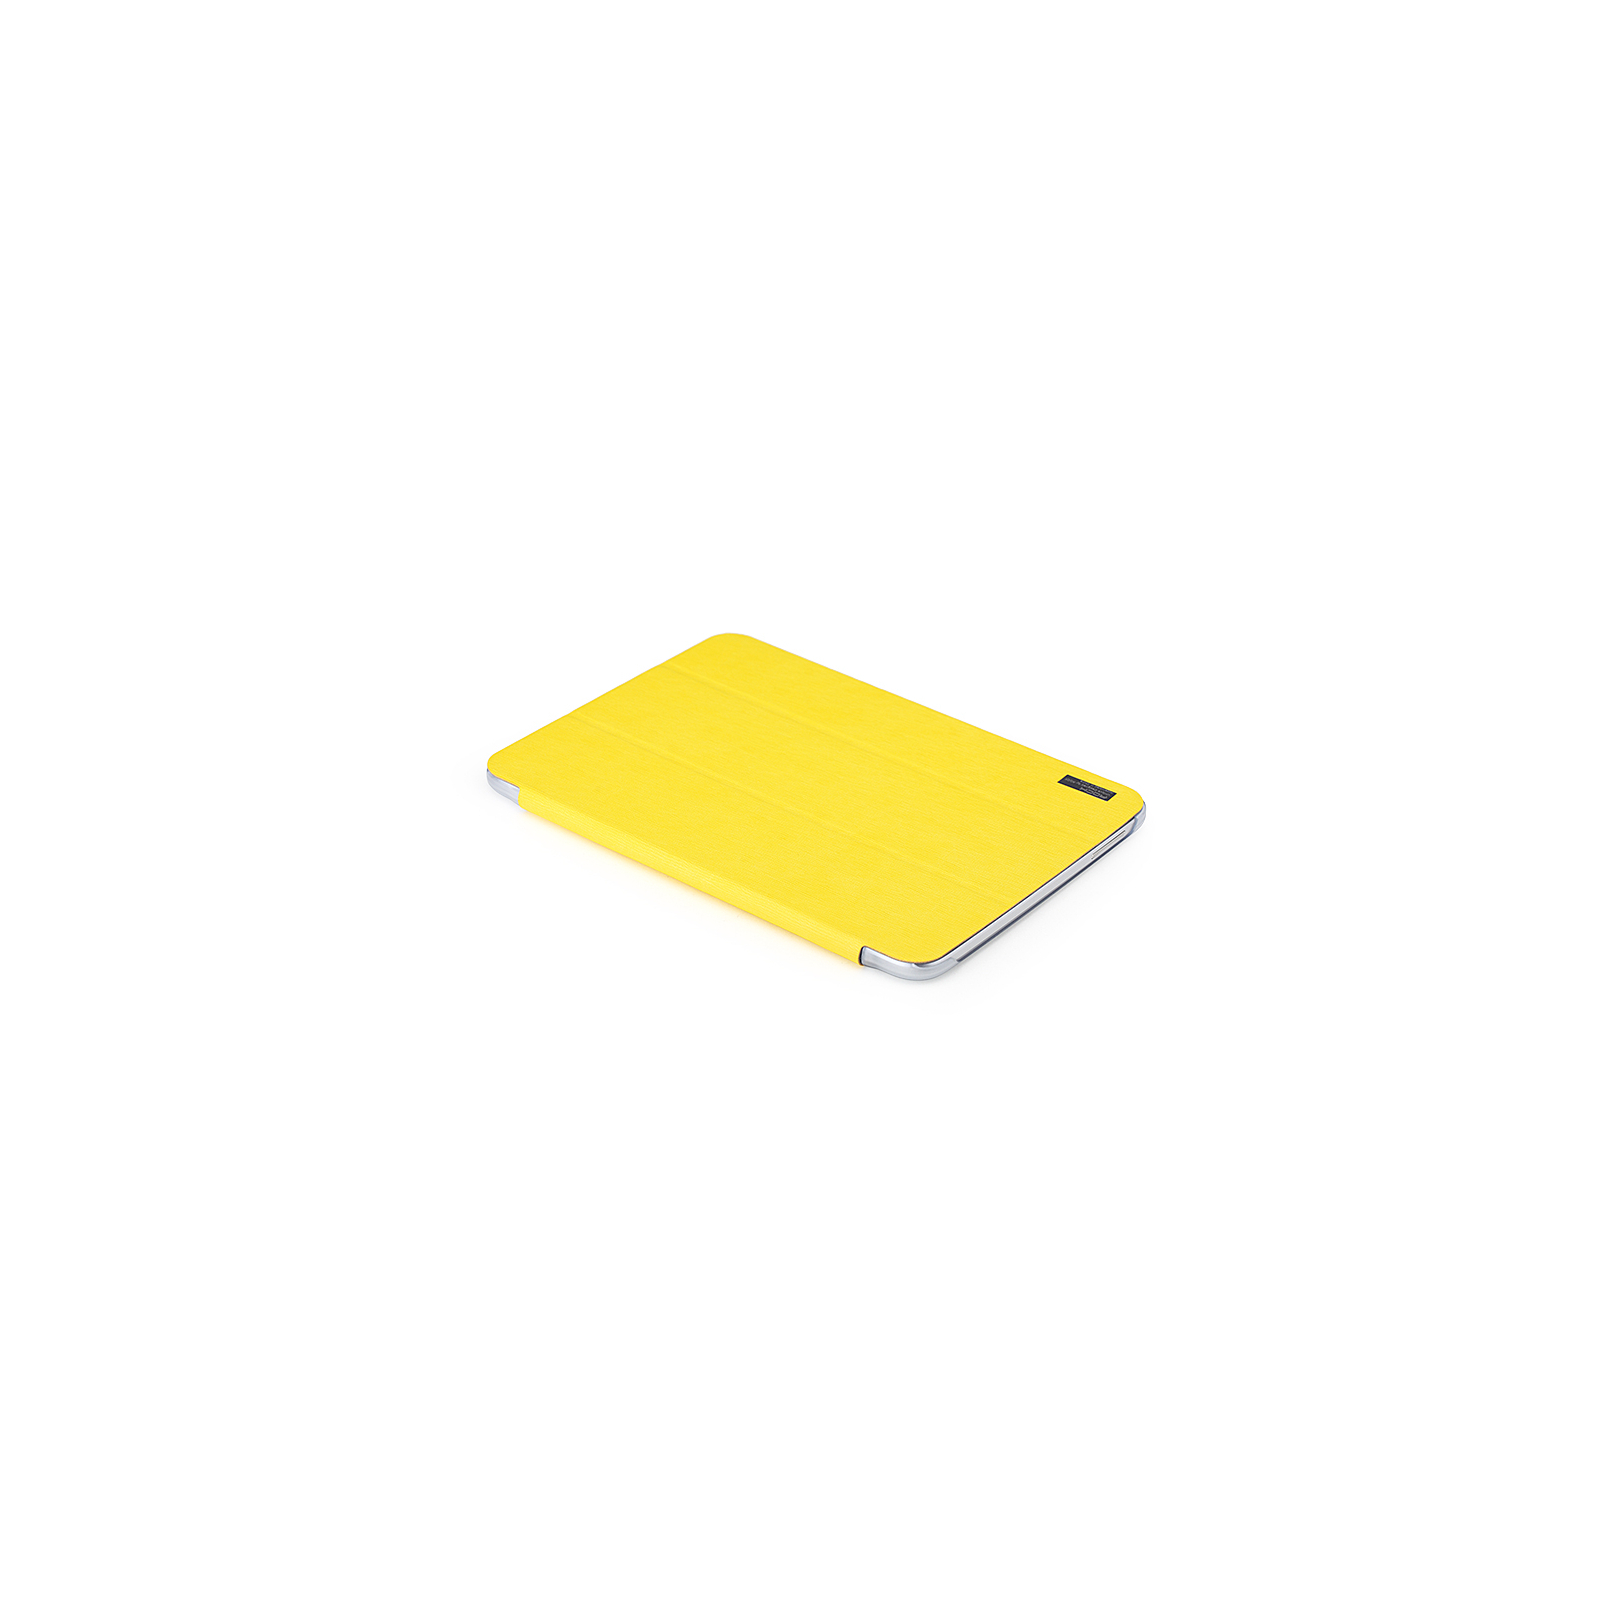 Чохол до планшета Rock Samsung Galaxy Tab3 10,1" new elegant series lemon yellow (P5200-40568) зображення 5